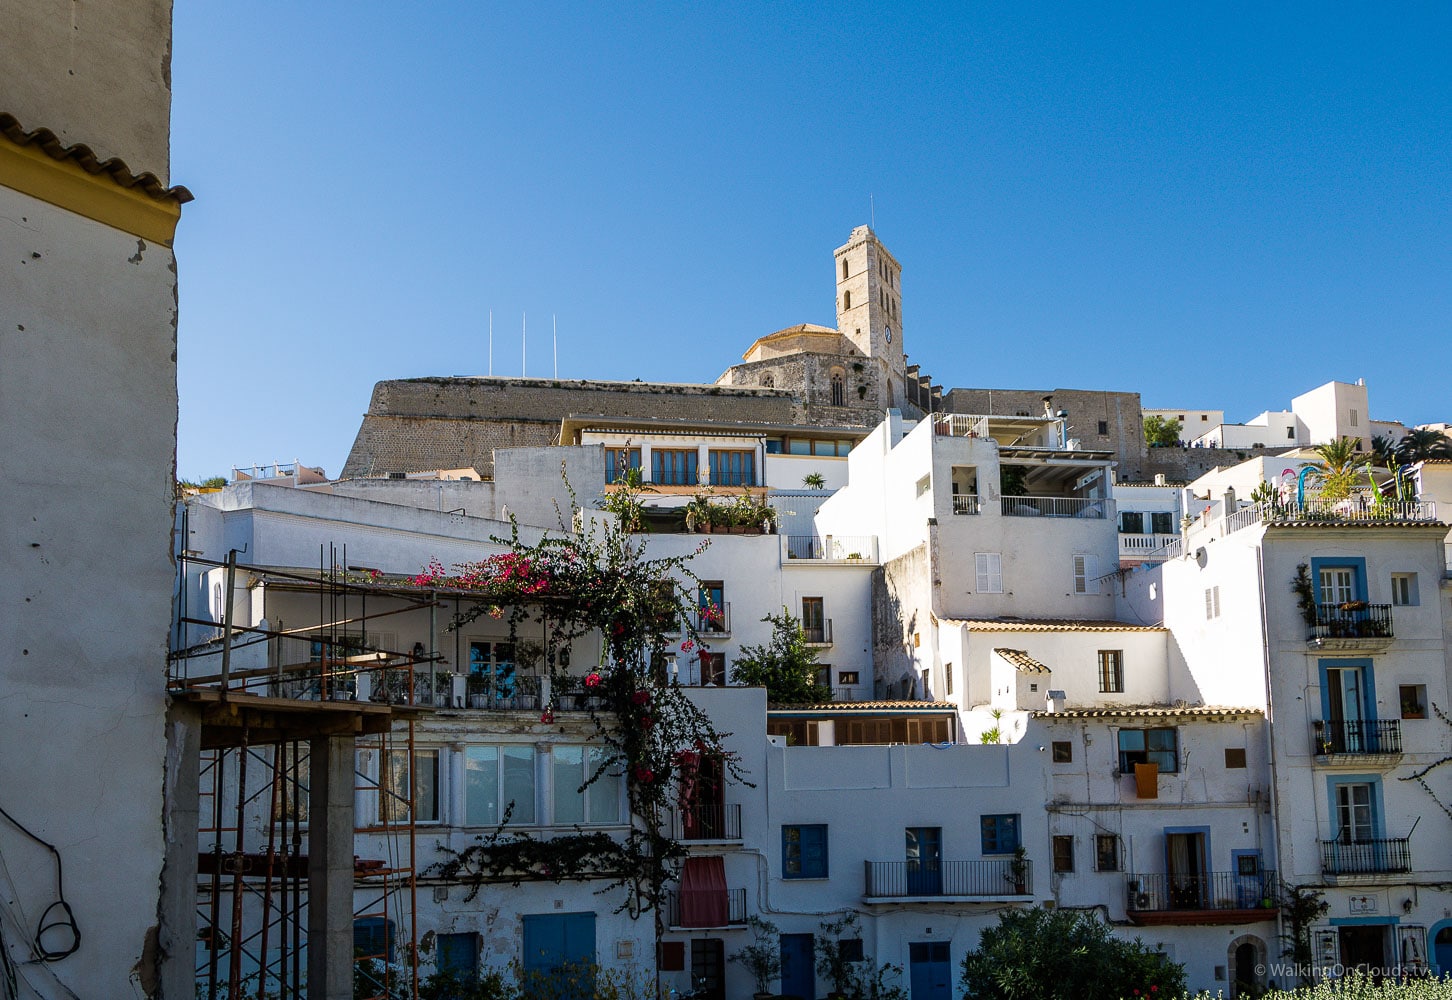 Als Kreuzfahrtblog Ibiza erleben - die Alstadt und Sehenswürdigkeiten - Mittemeerkreuzfahrt mit der TUI Mein Schiff 5 - Welche Ausfluege kann man auf Ibiza unternehmen? Reiseblog über Kreuzfahrten und Fernreisen für Alleinreisende Menschen